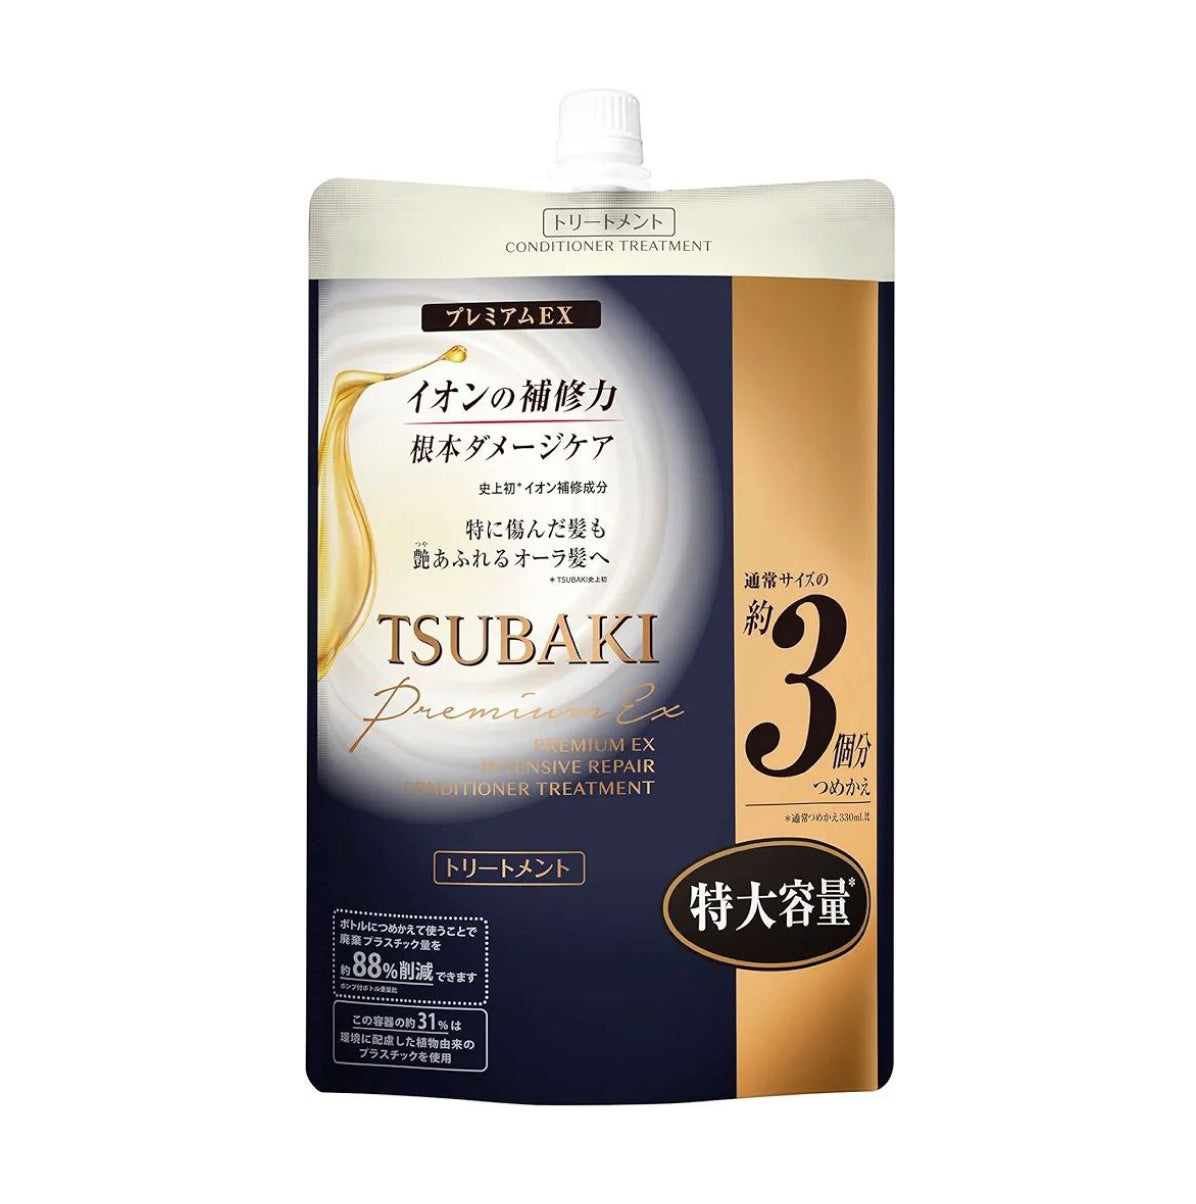 TSUBAKI PREMIUM EX INTENSIVE REPAIR CONDITIONER TREATMENT Restoring conditioner-mask for damaged hair